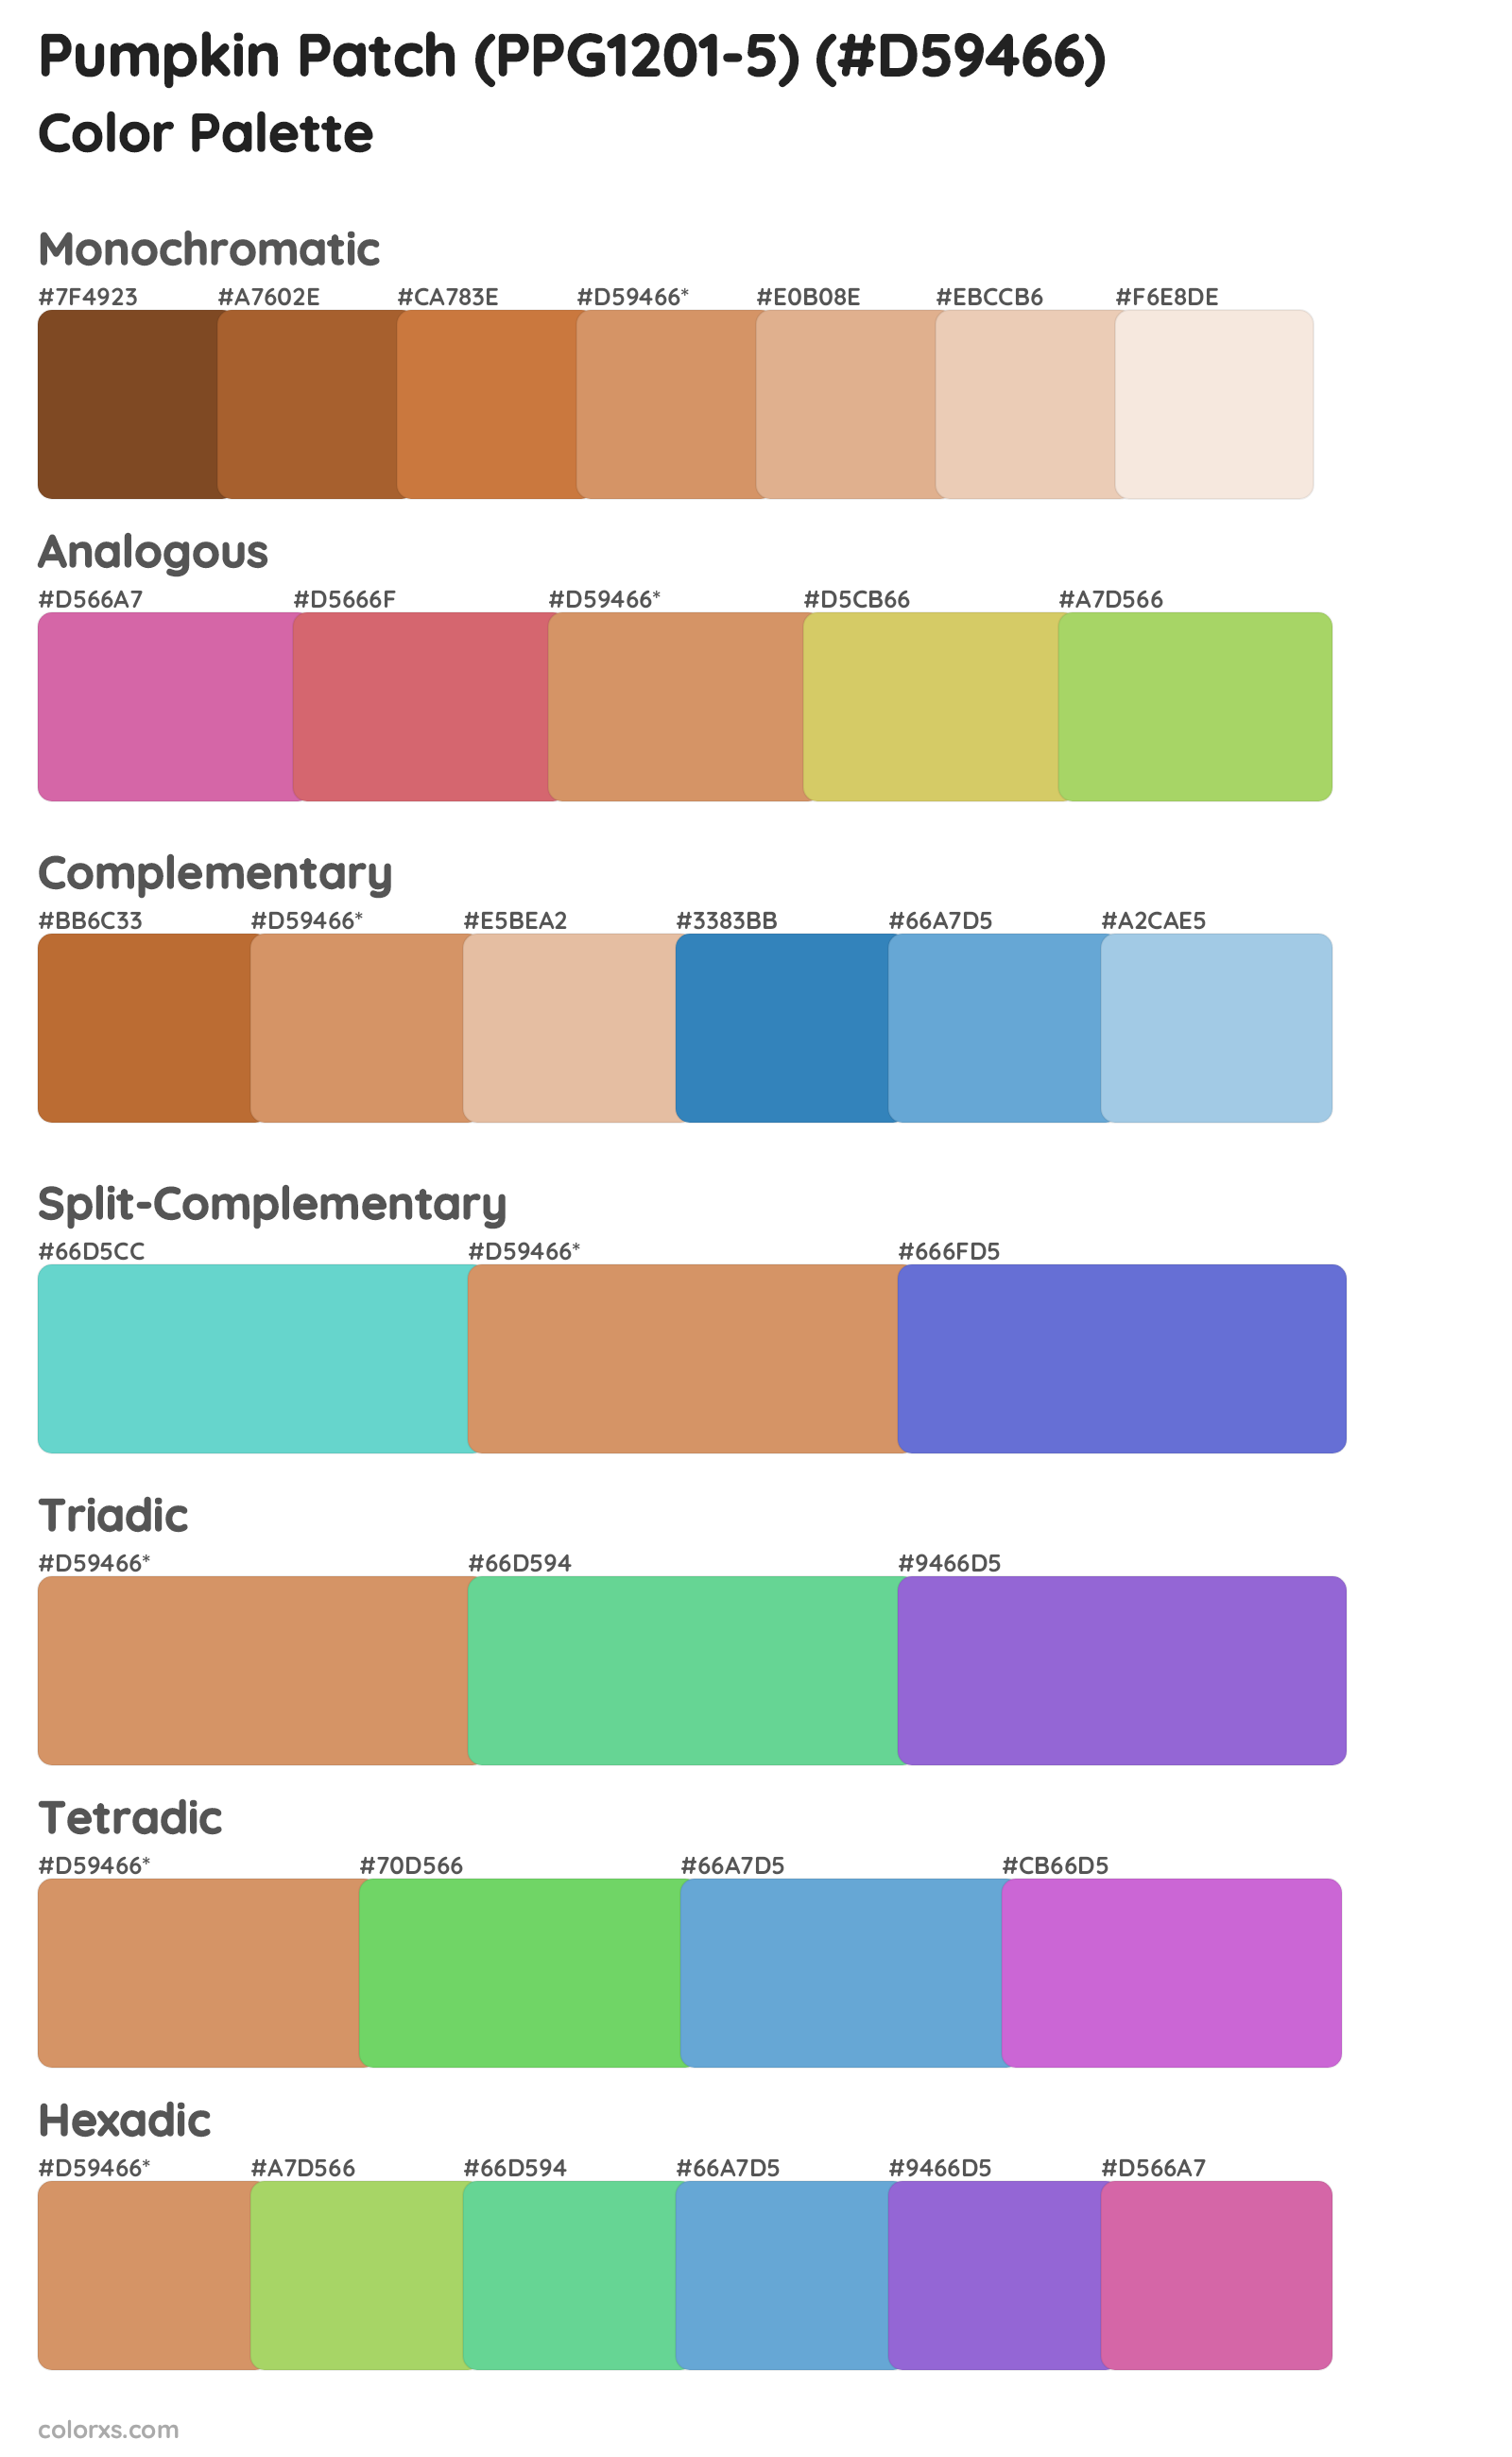 Pumpkin Patch (PPG1201-5) Color Scheme Palettes